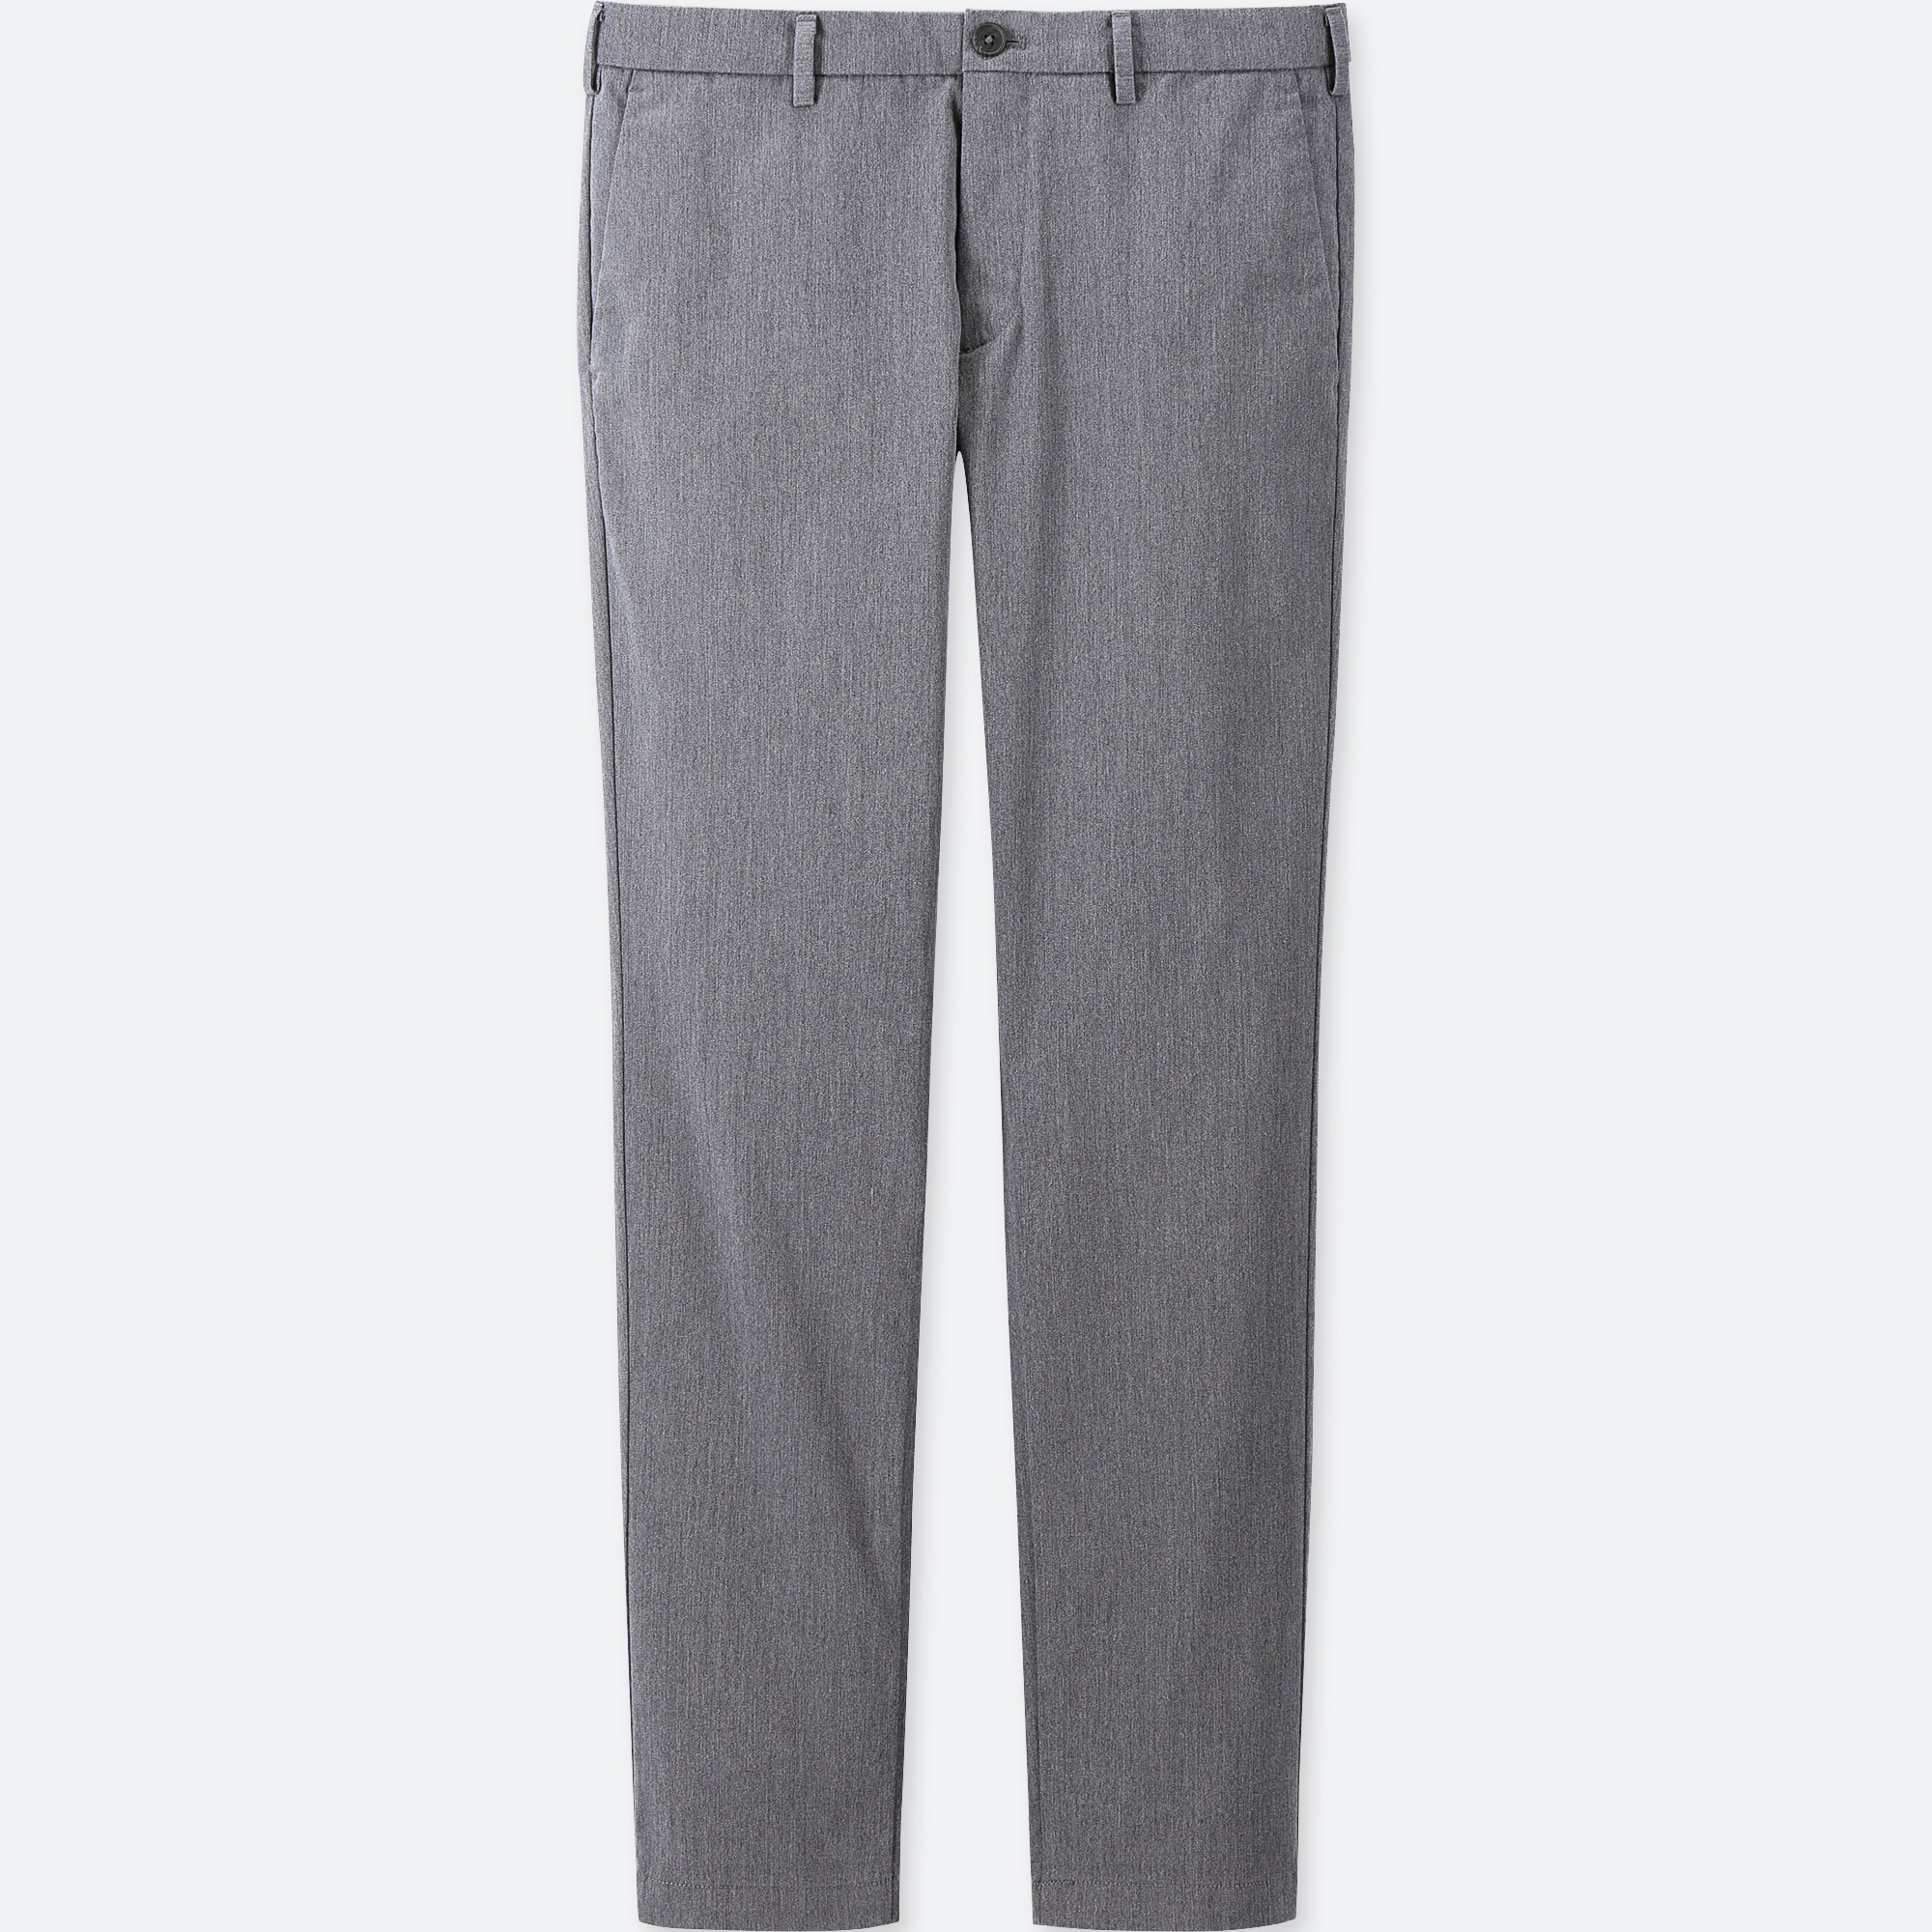 chino gray pants